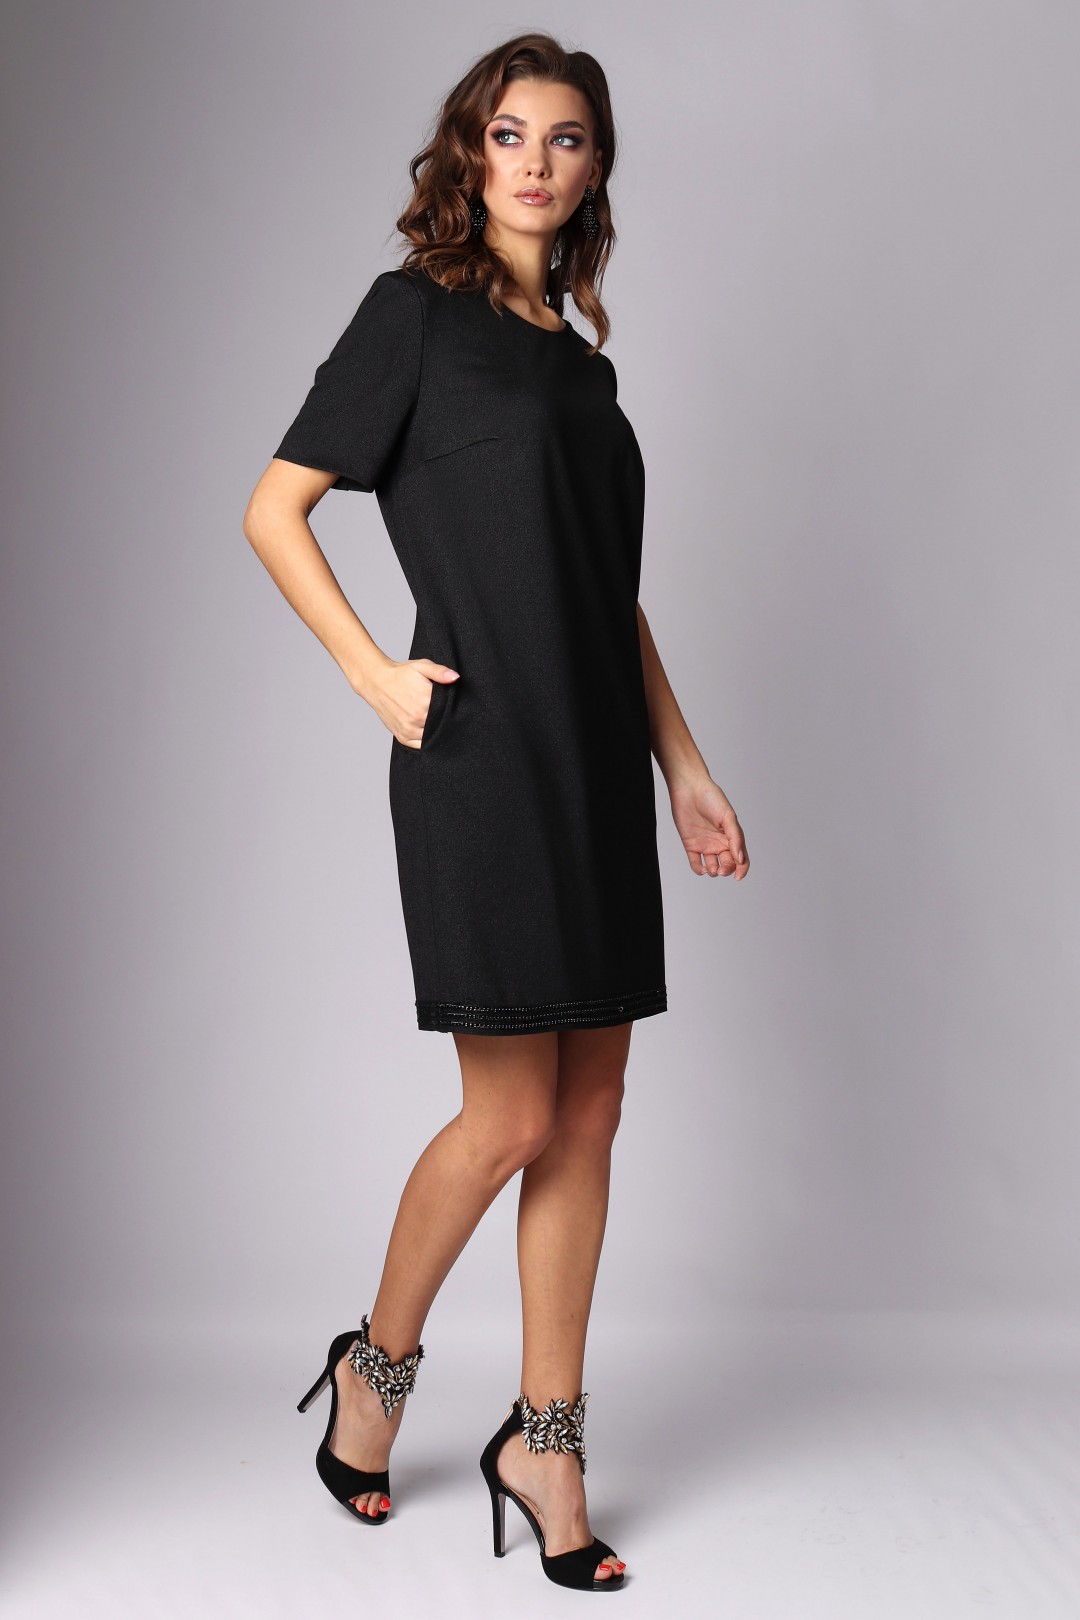 Платье МиА-Мода 1200-2 черный